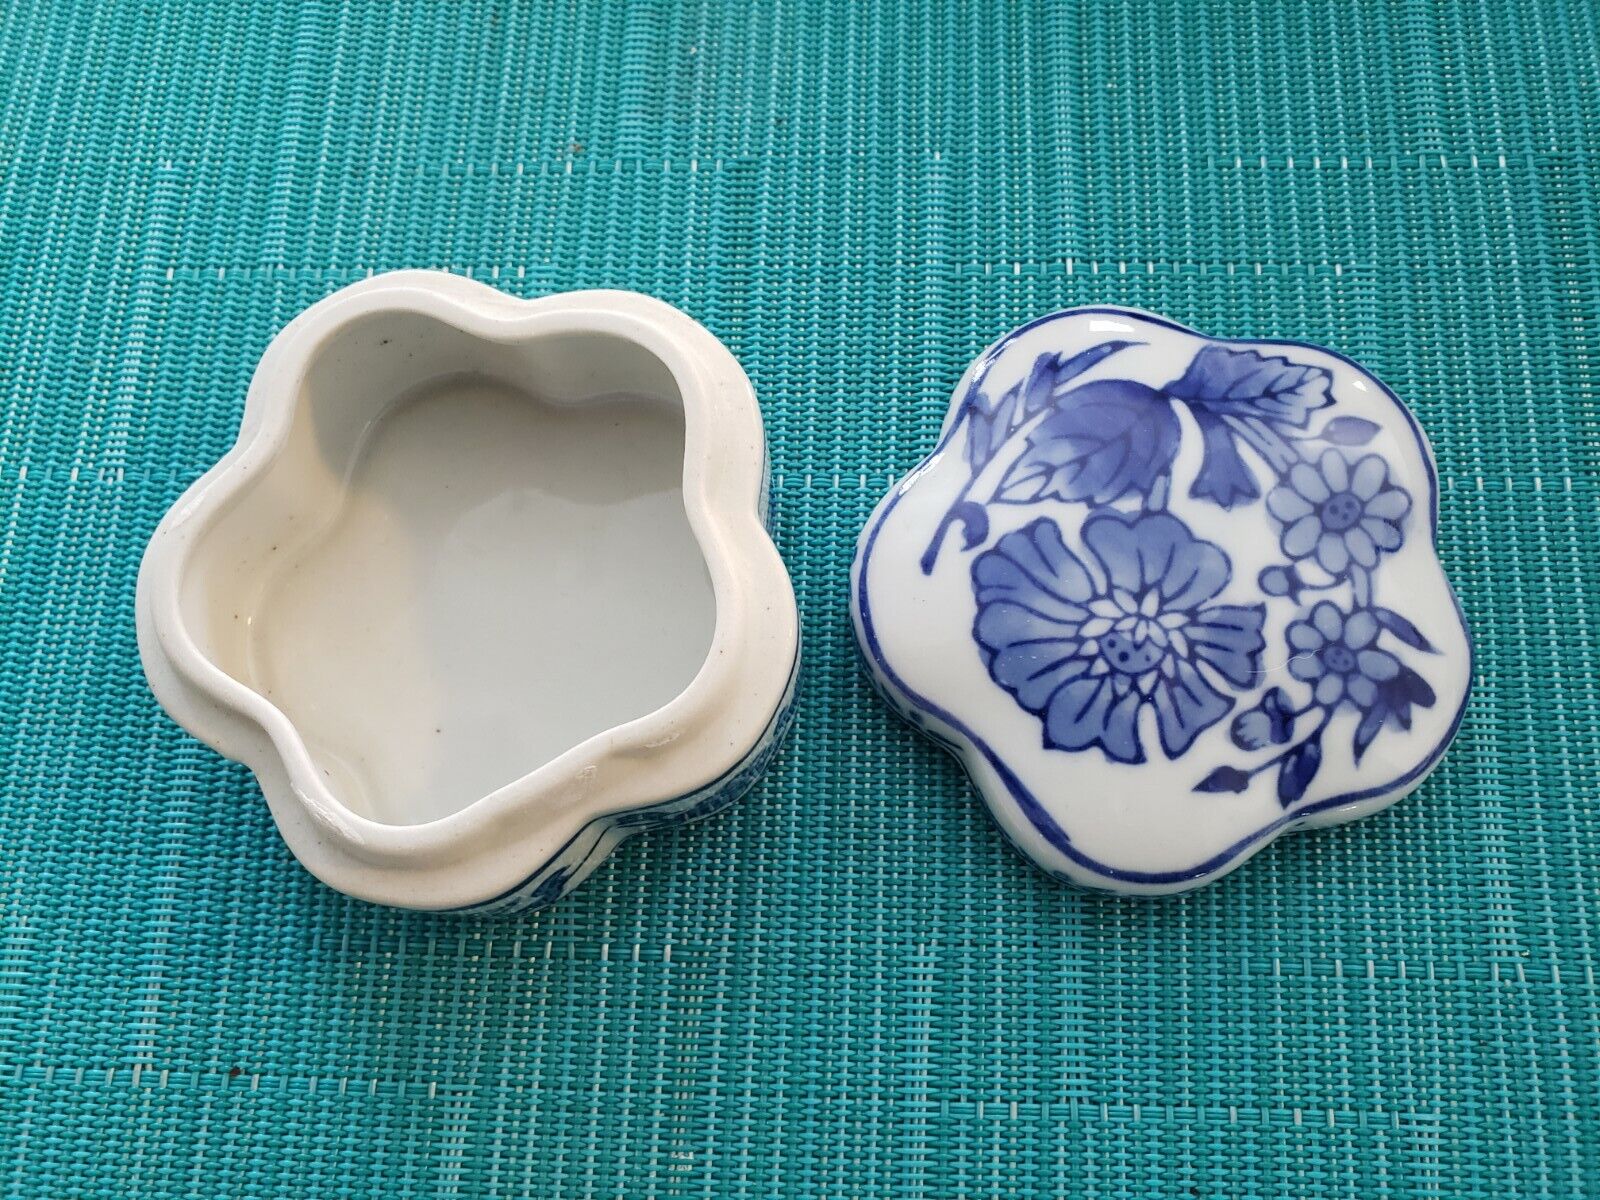 Vintage Porcelain Flower Shaped Trinket Boxes Blue & White